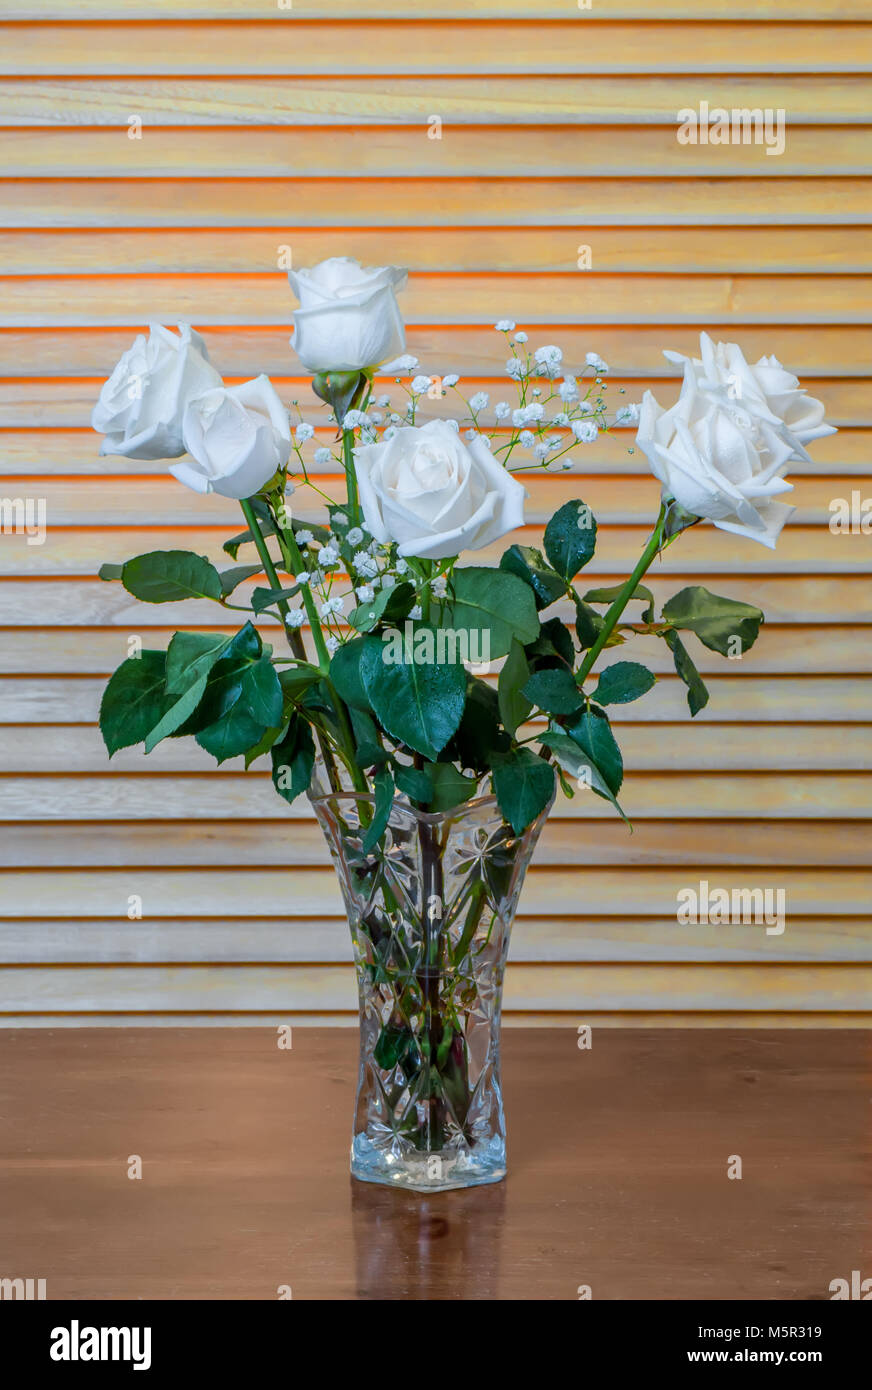 L'usine est un bouquet de roses blanches avec des feuilles vertes et petites fleurs blanches, dans un vase en verre sur une table en bois brun foncé, dans le contexte d'ye Banque D'Images